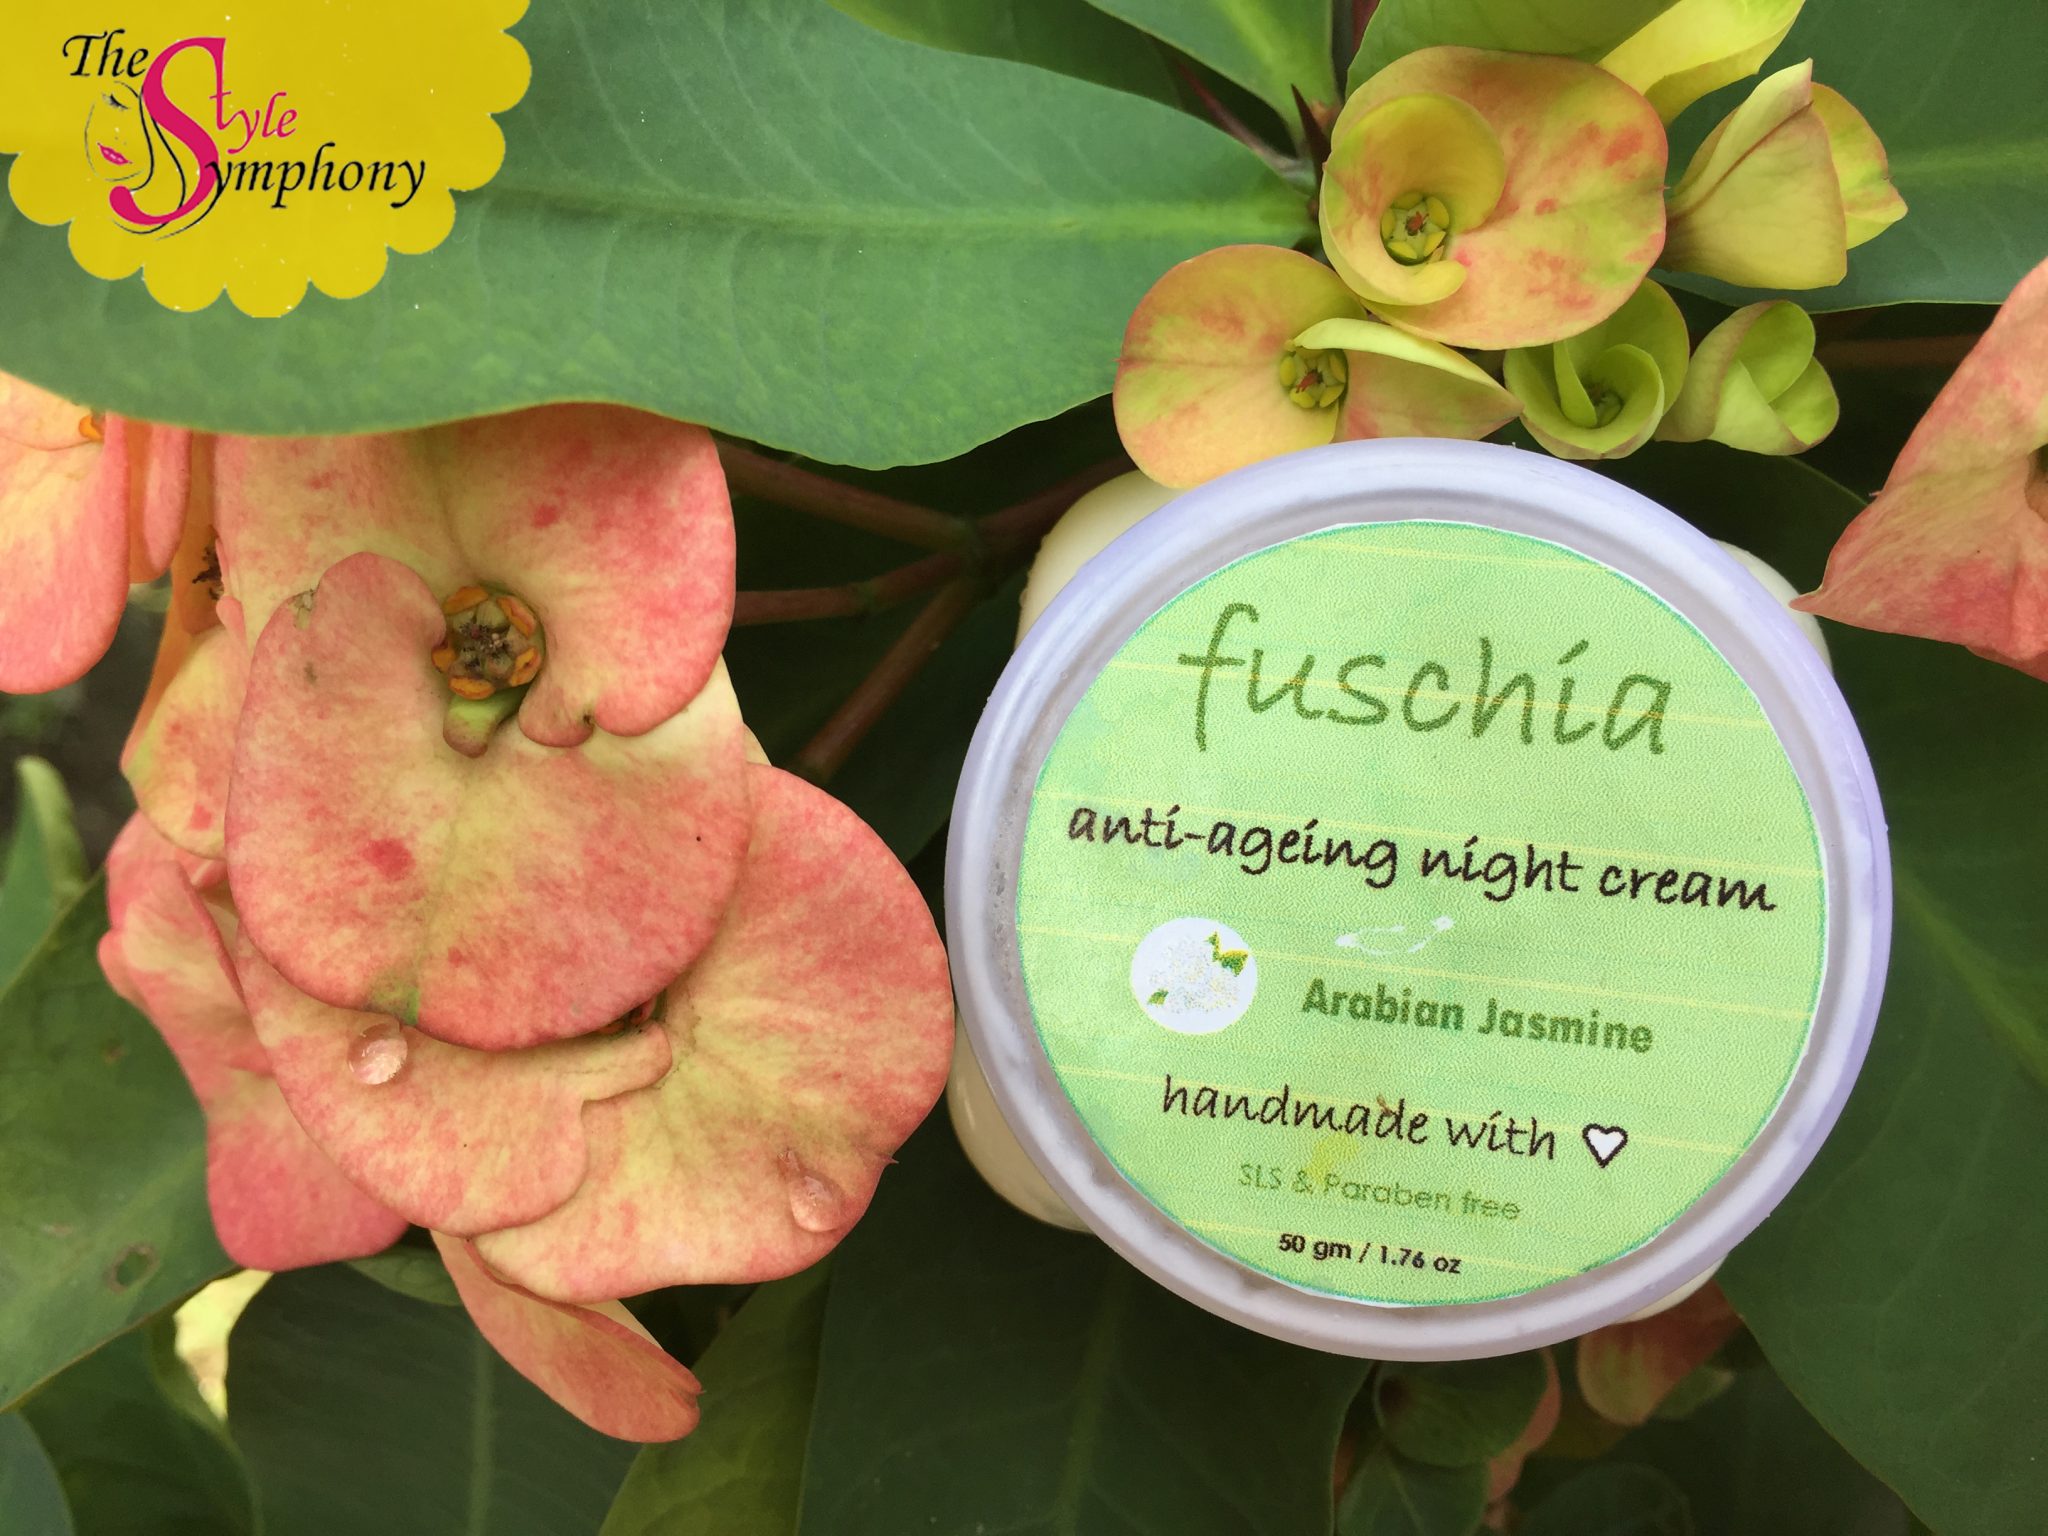 Fuschia Arabian Jasmine Anti-ageing Night Cream